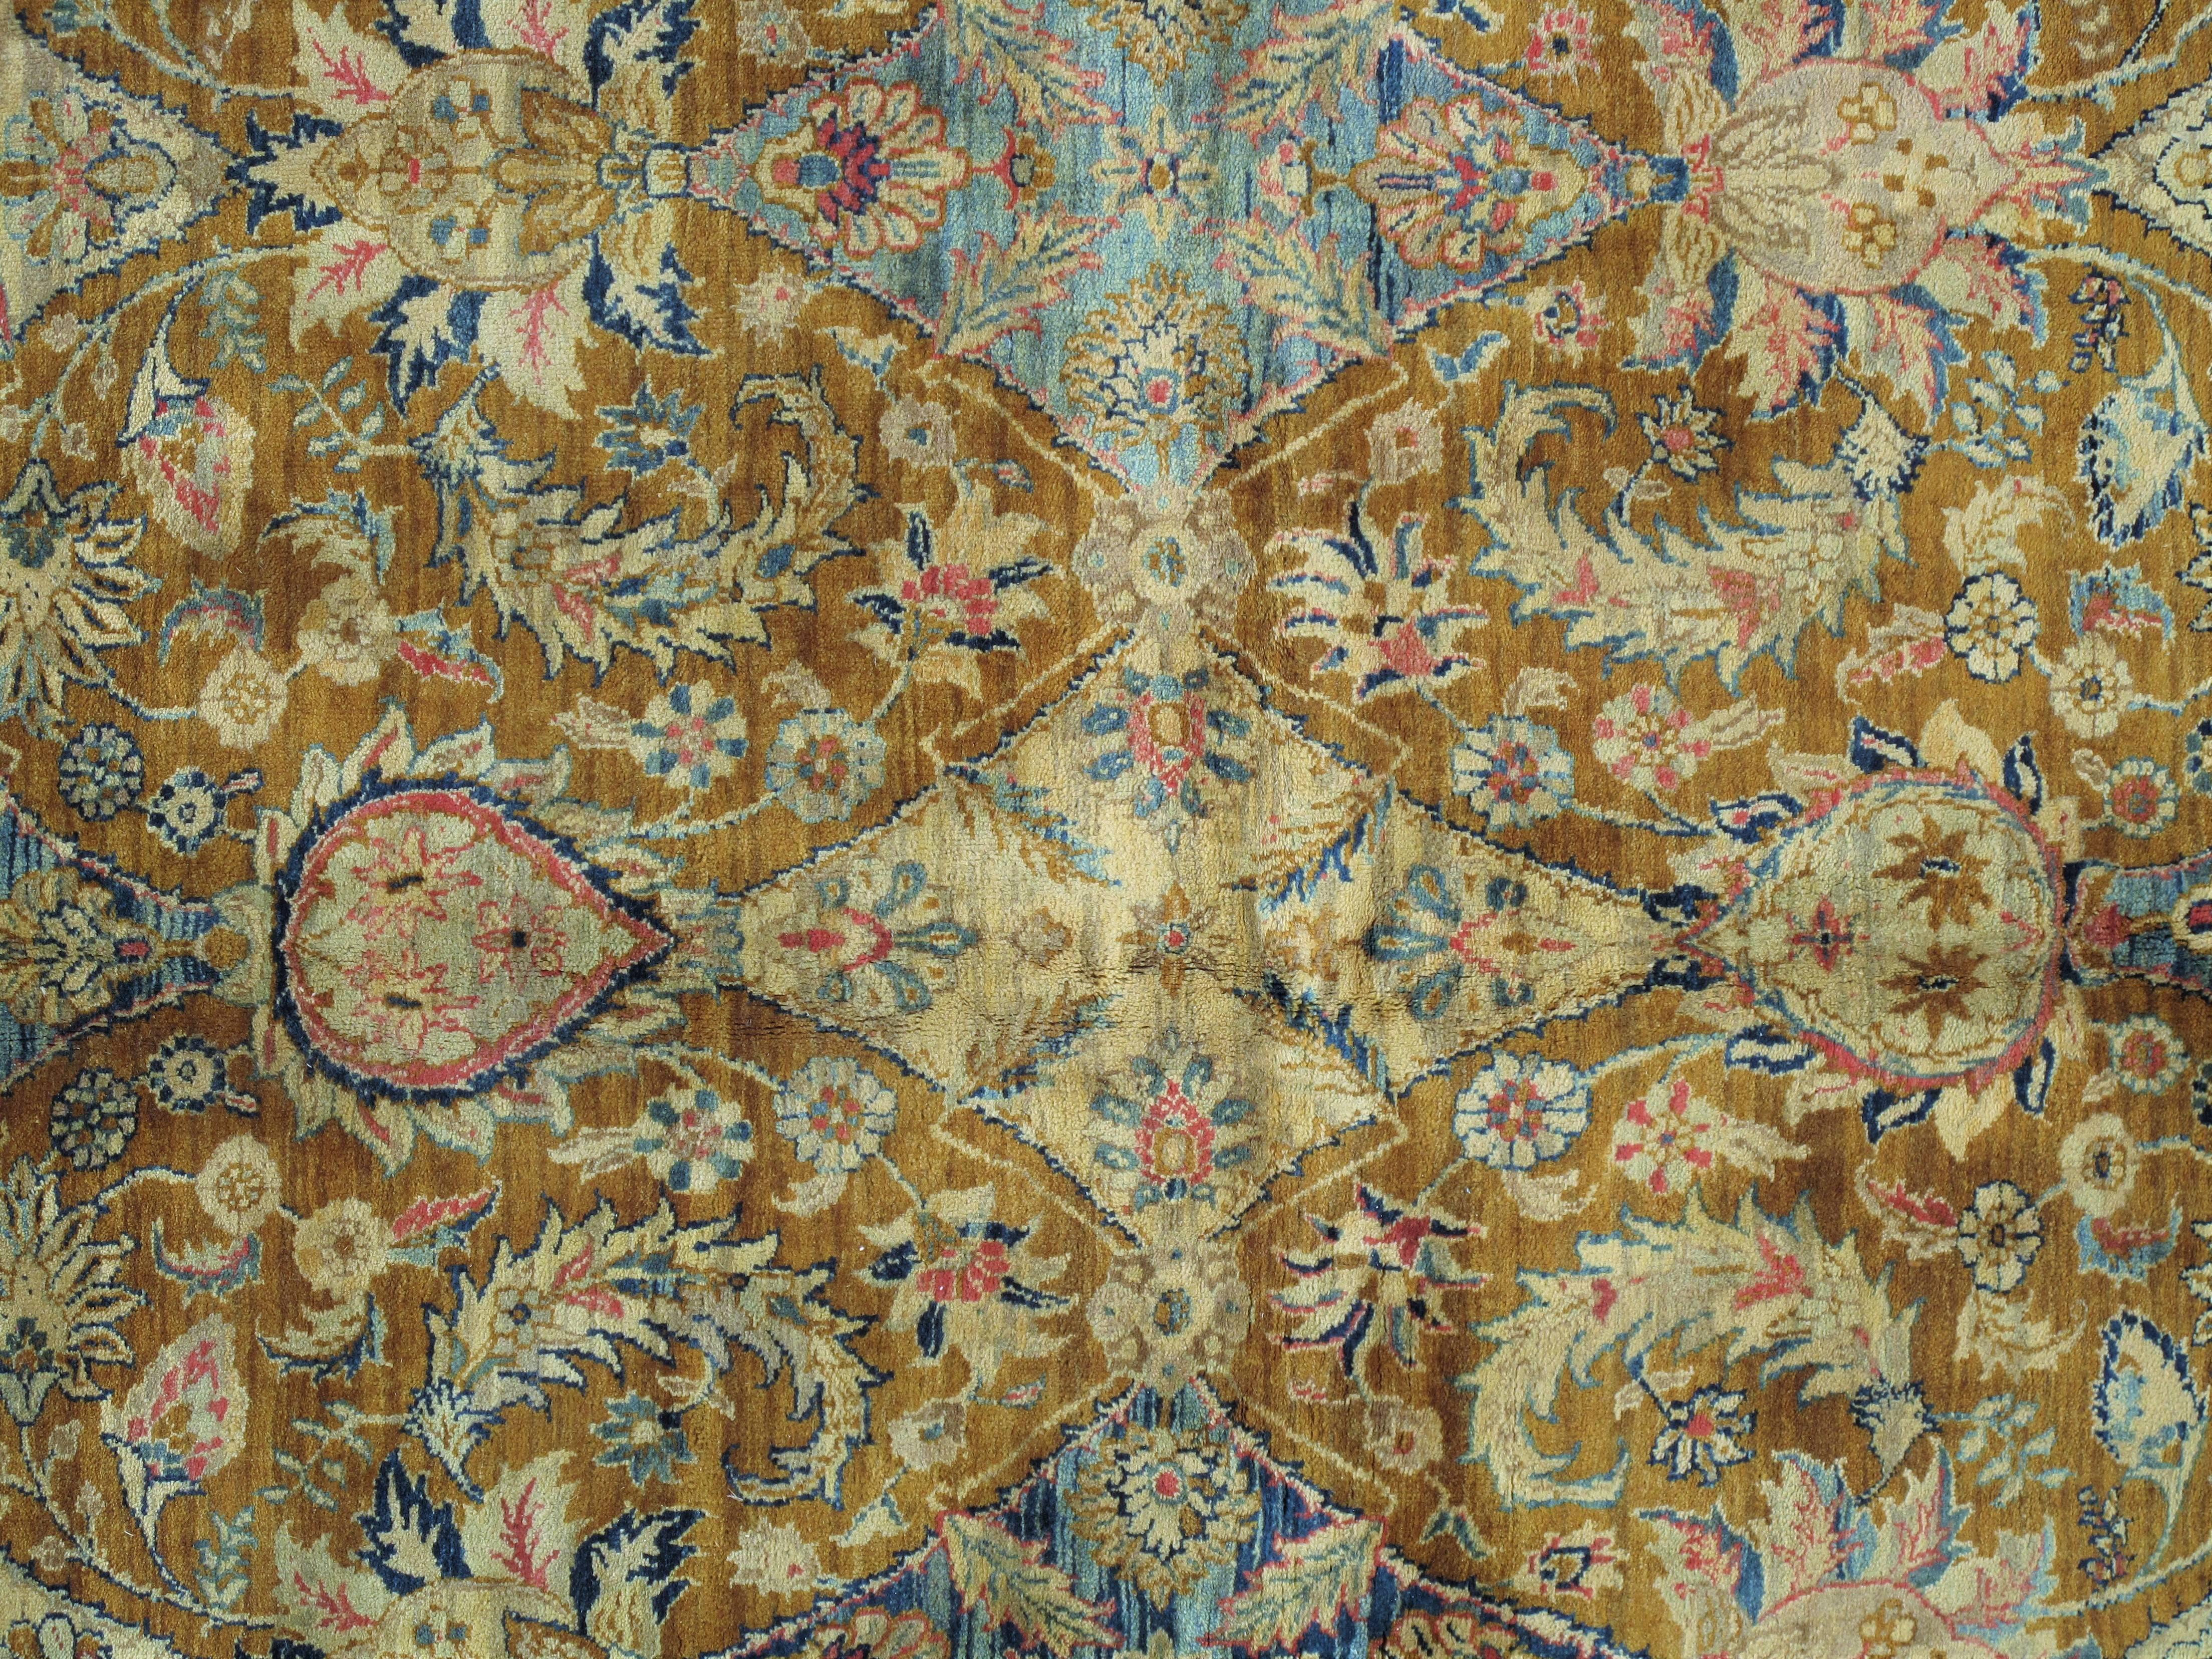 Les tapis de Tabriz ont toujours été parmi les tissus les plus beaux et les plus facilement reconnaissables de Perse, avec des motifs floraux gracieux et curvilignes dans une brillante variété de couleurs. De manière constante, des années 1870 aux